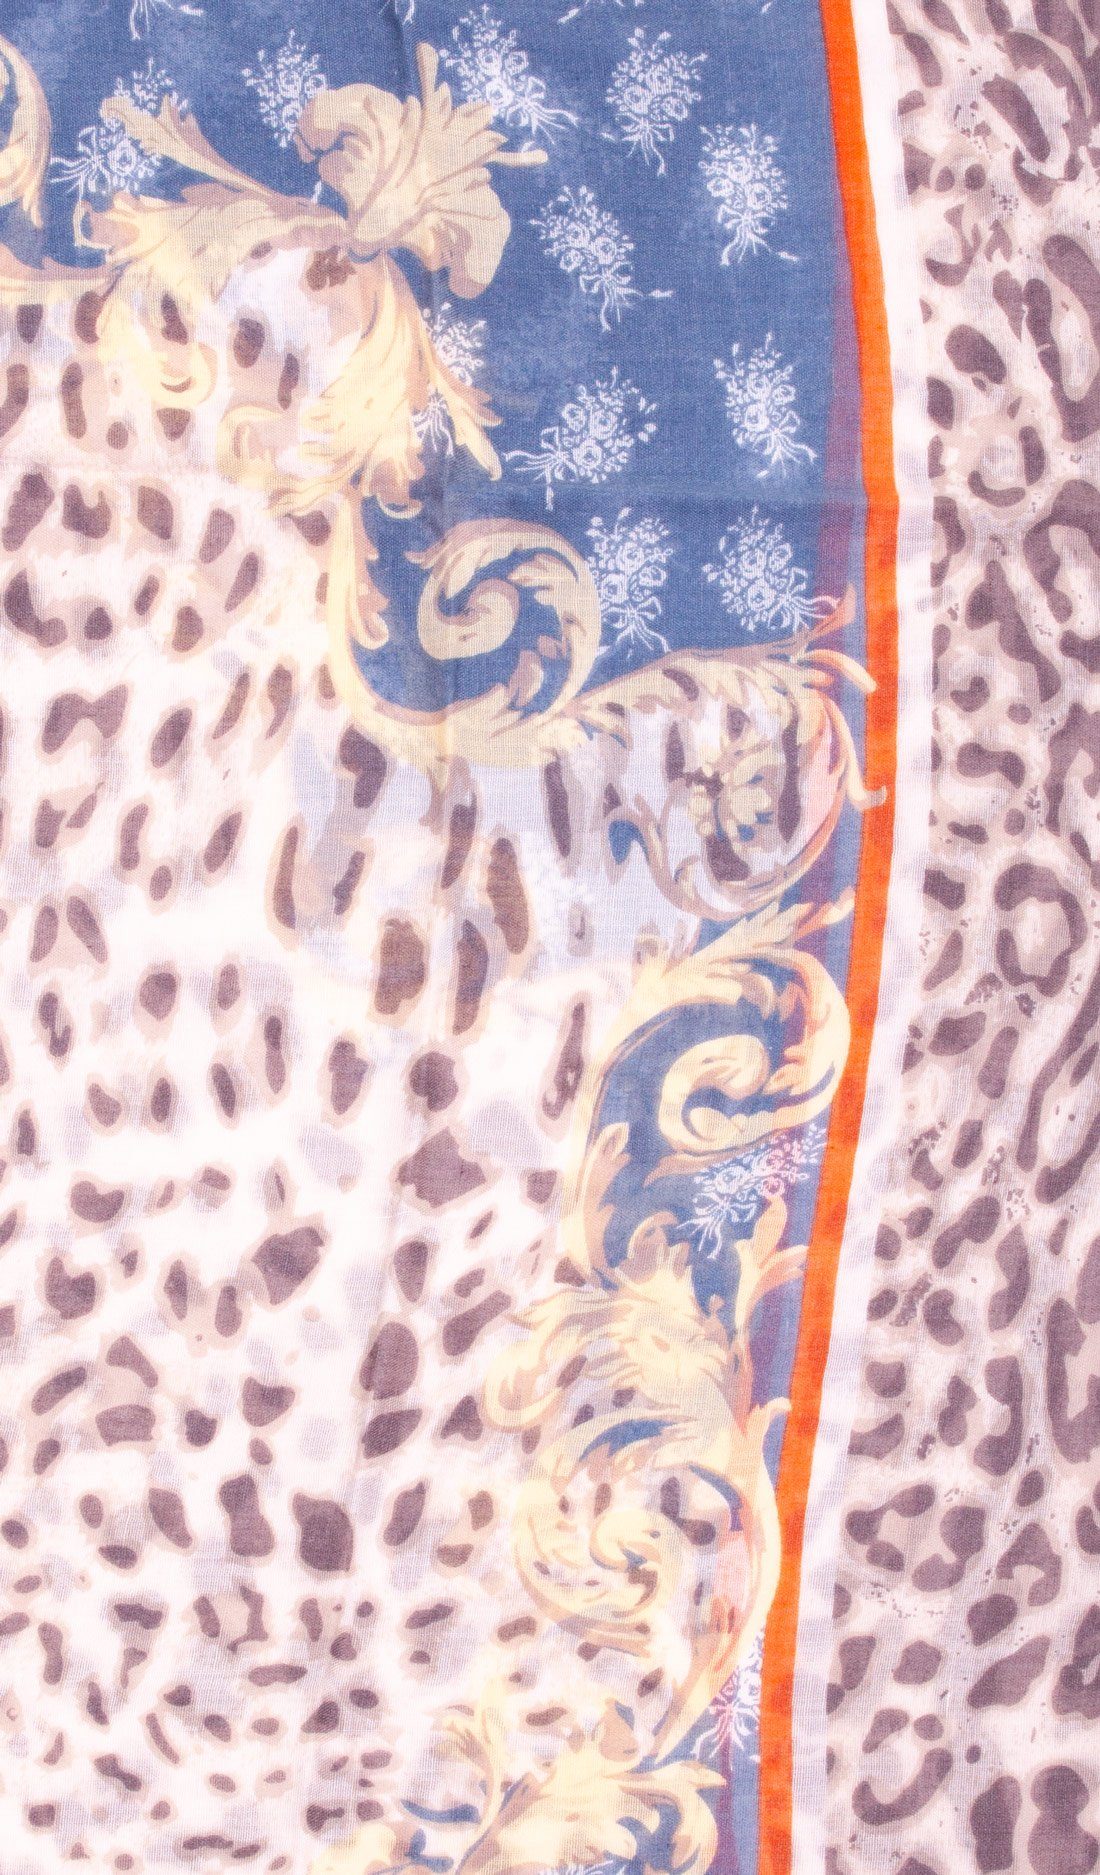 Faera Loop, Damen italienisch-römisches Farben Rundschal leicht mehreren Schal Leopardenmuster Loopschal braun weich und